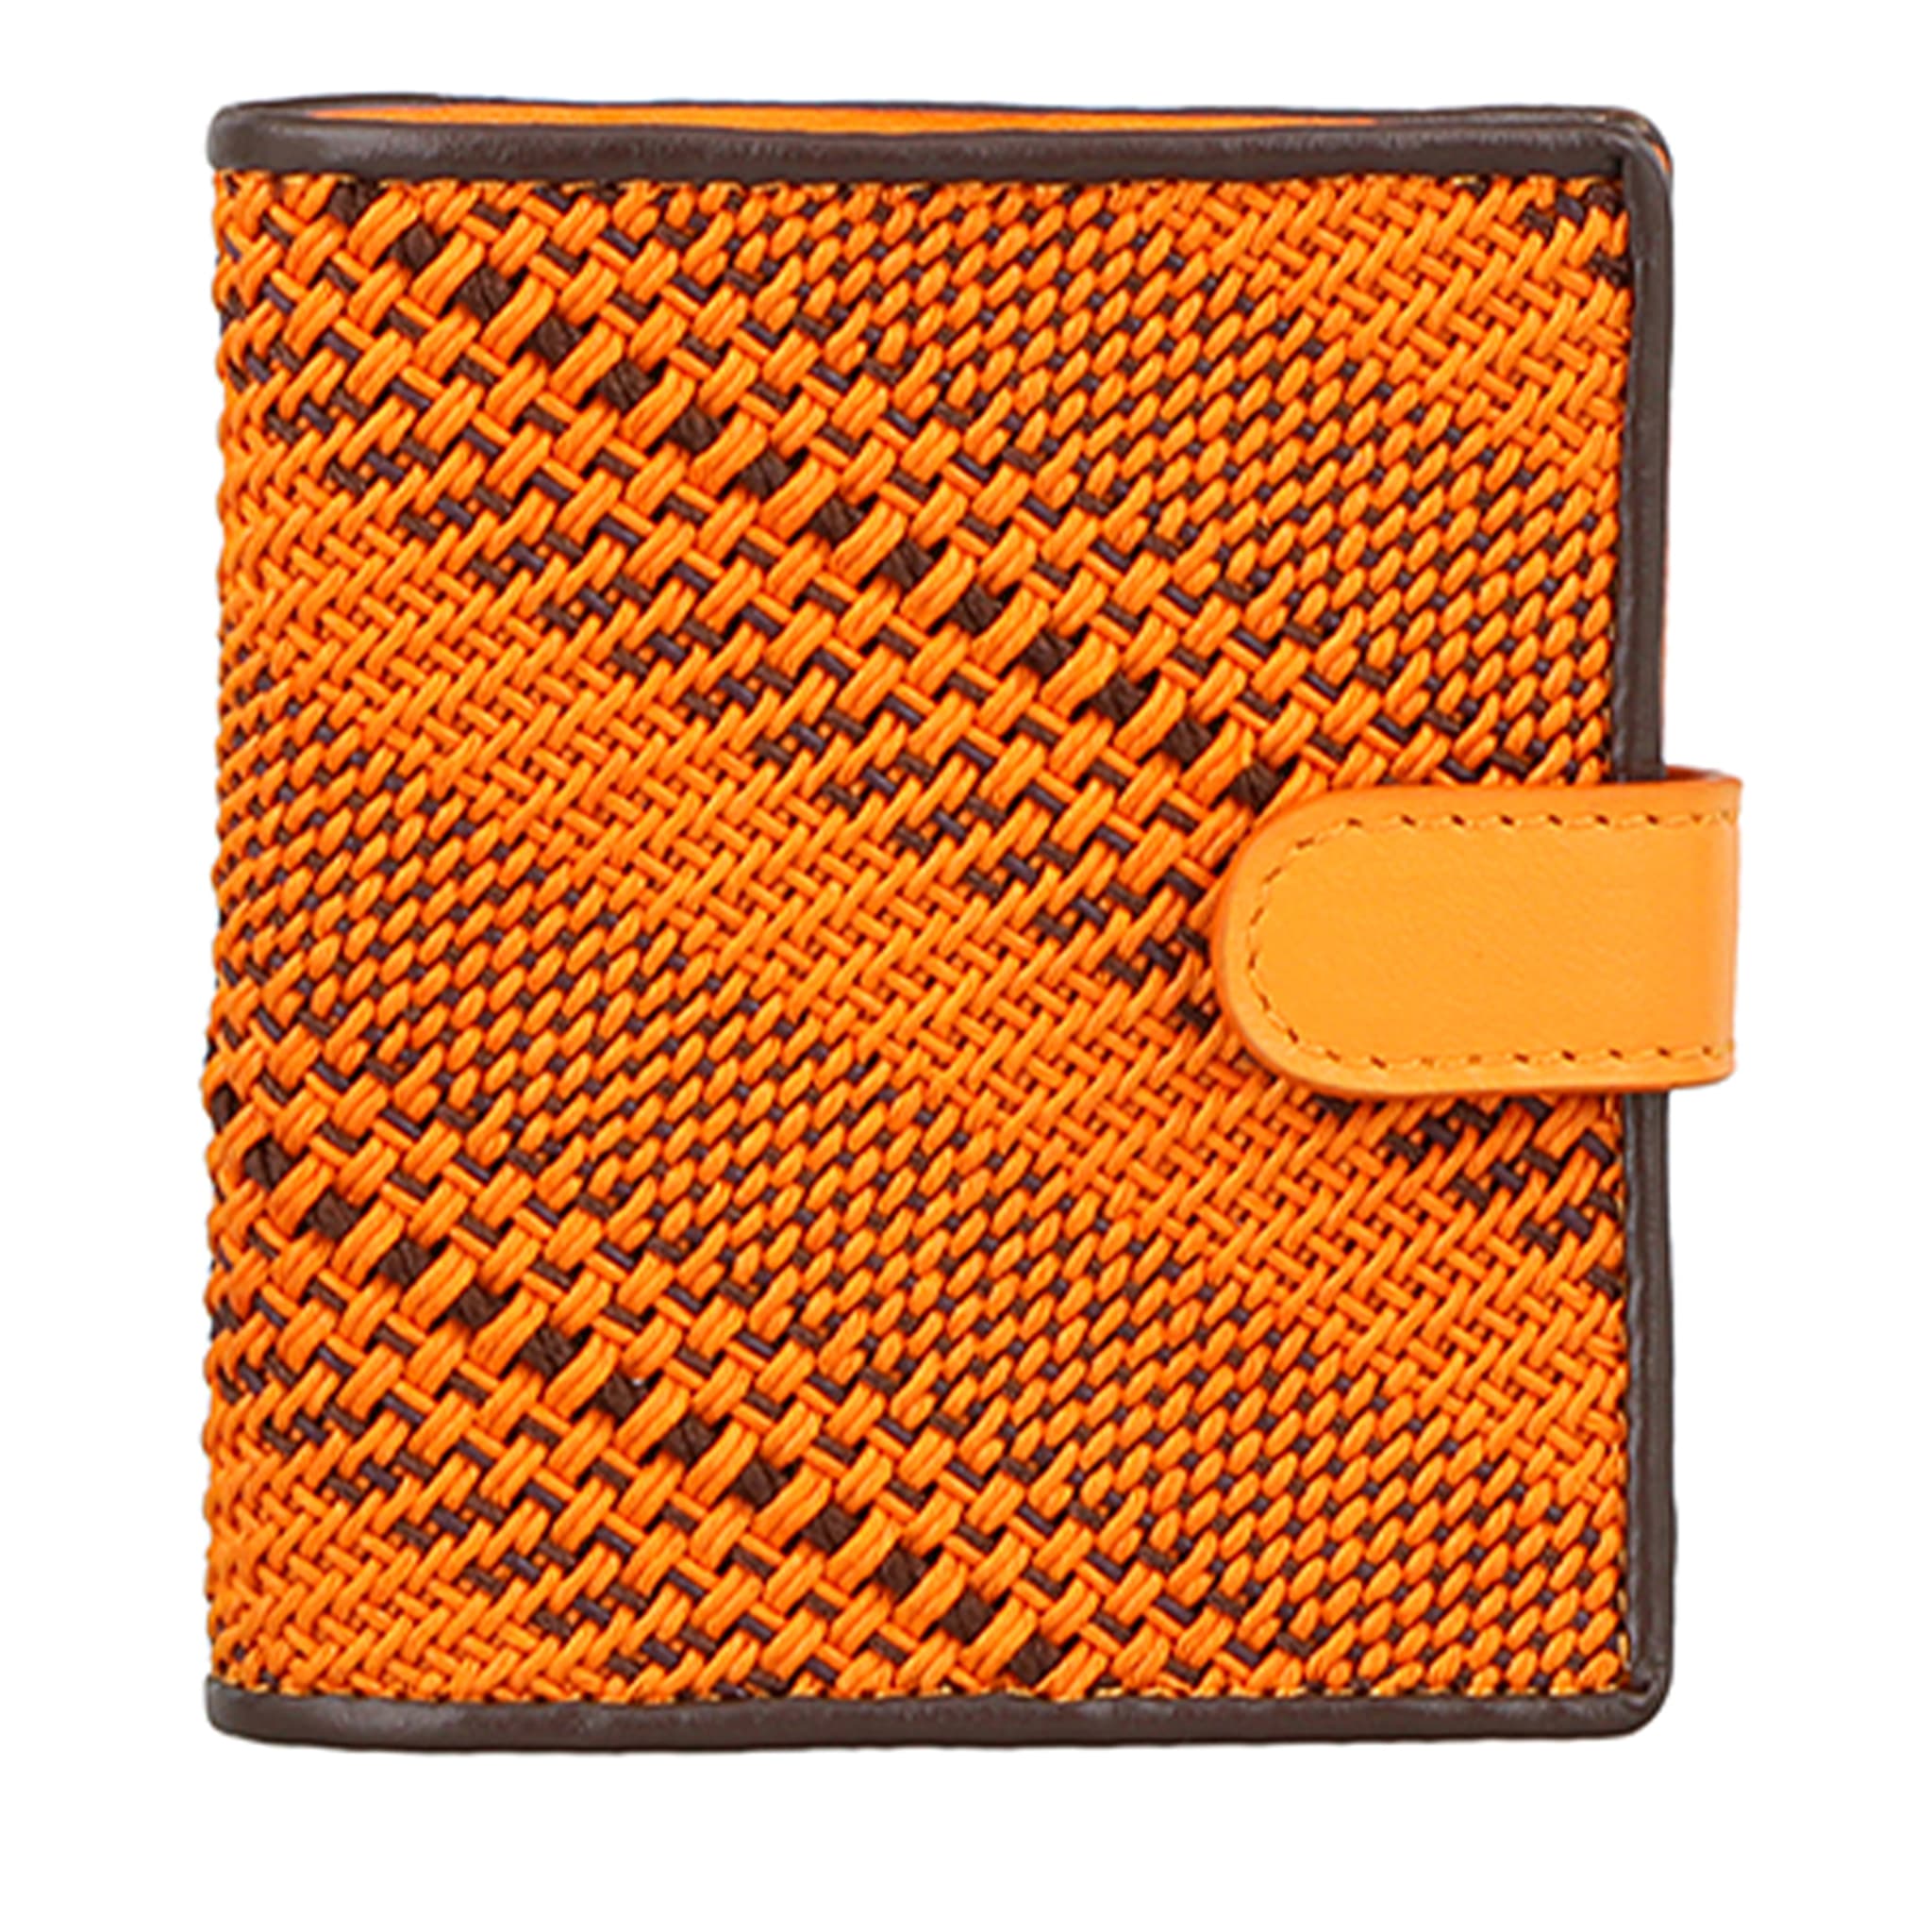 Braided Cotton Orange Wallet - Main view